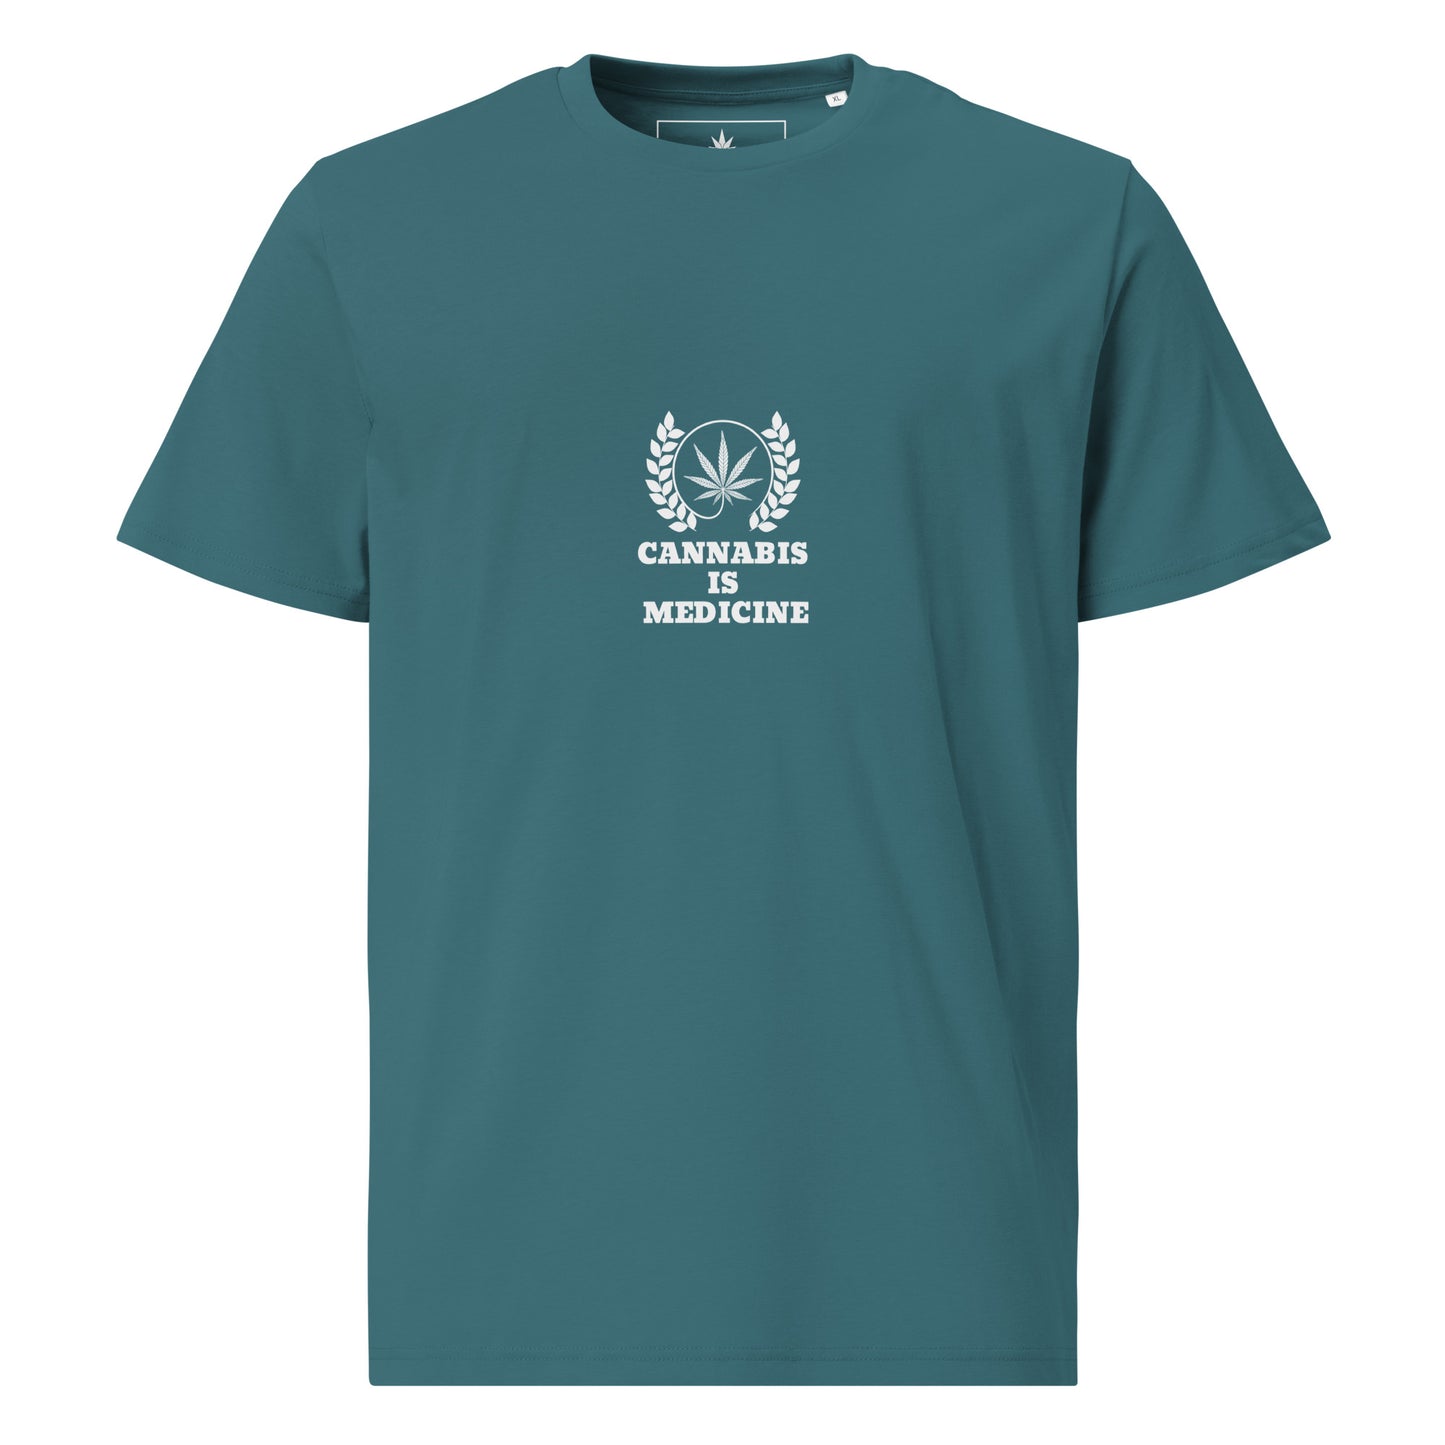 Cannabis ist Medizin Unisex-T-Shirt aus Bio-Baumwolle